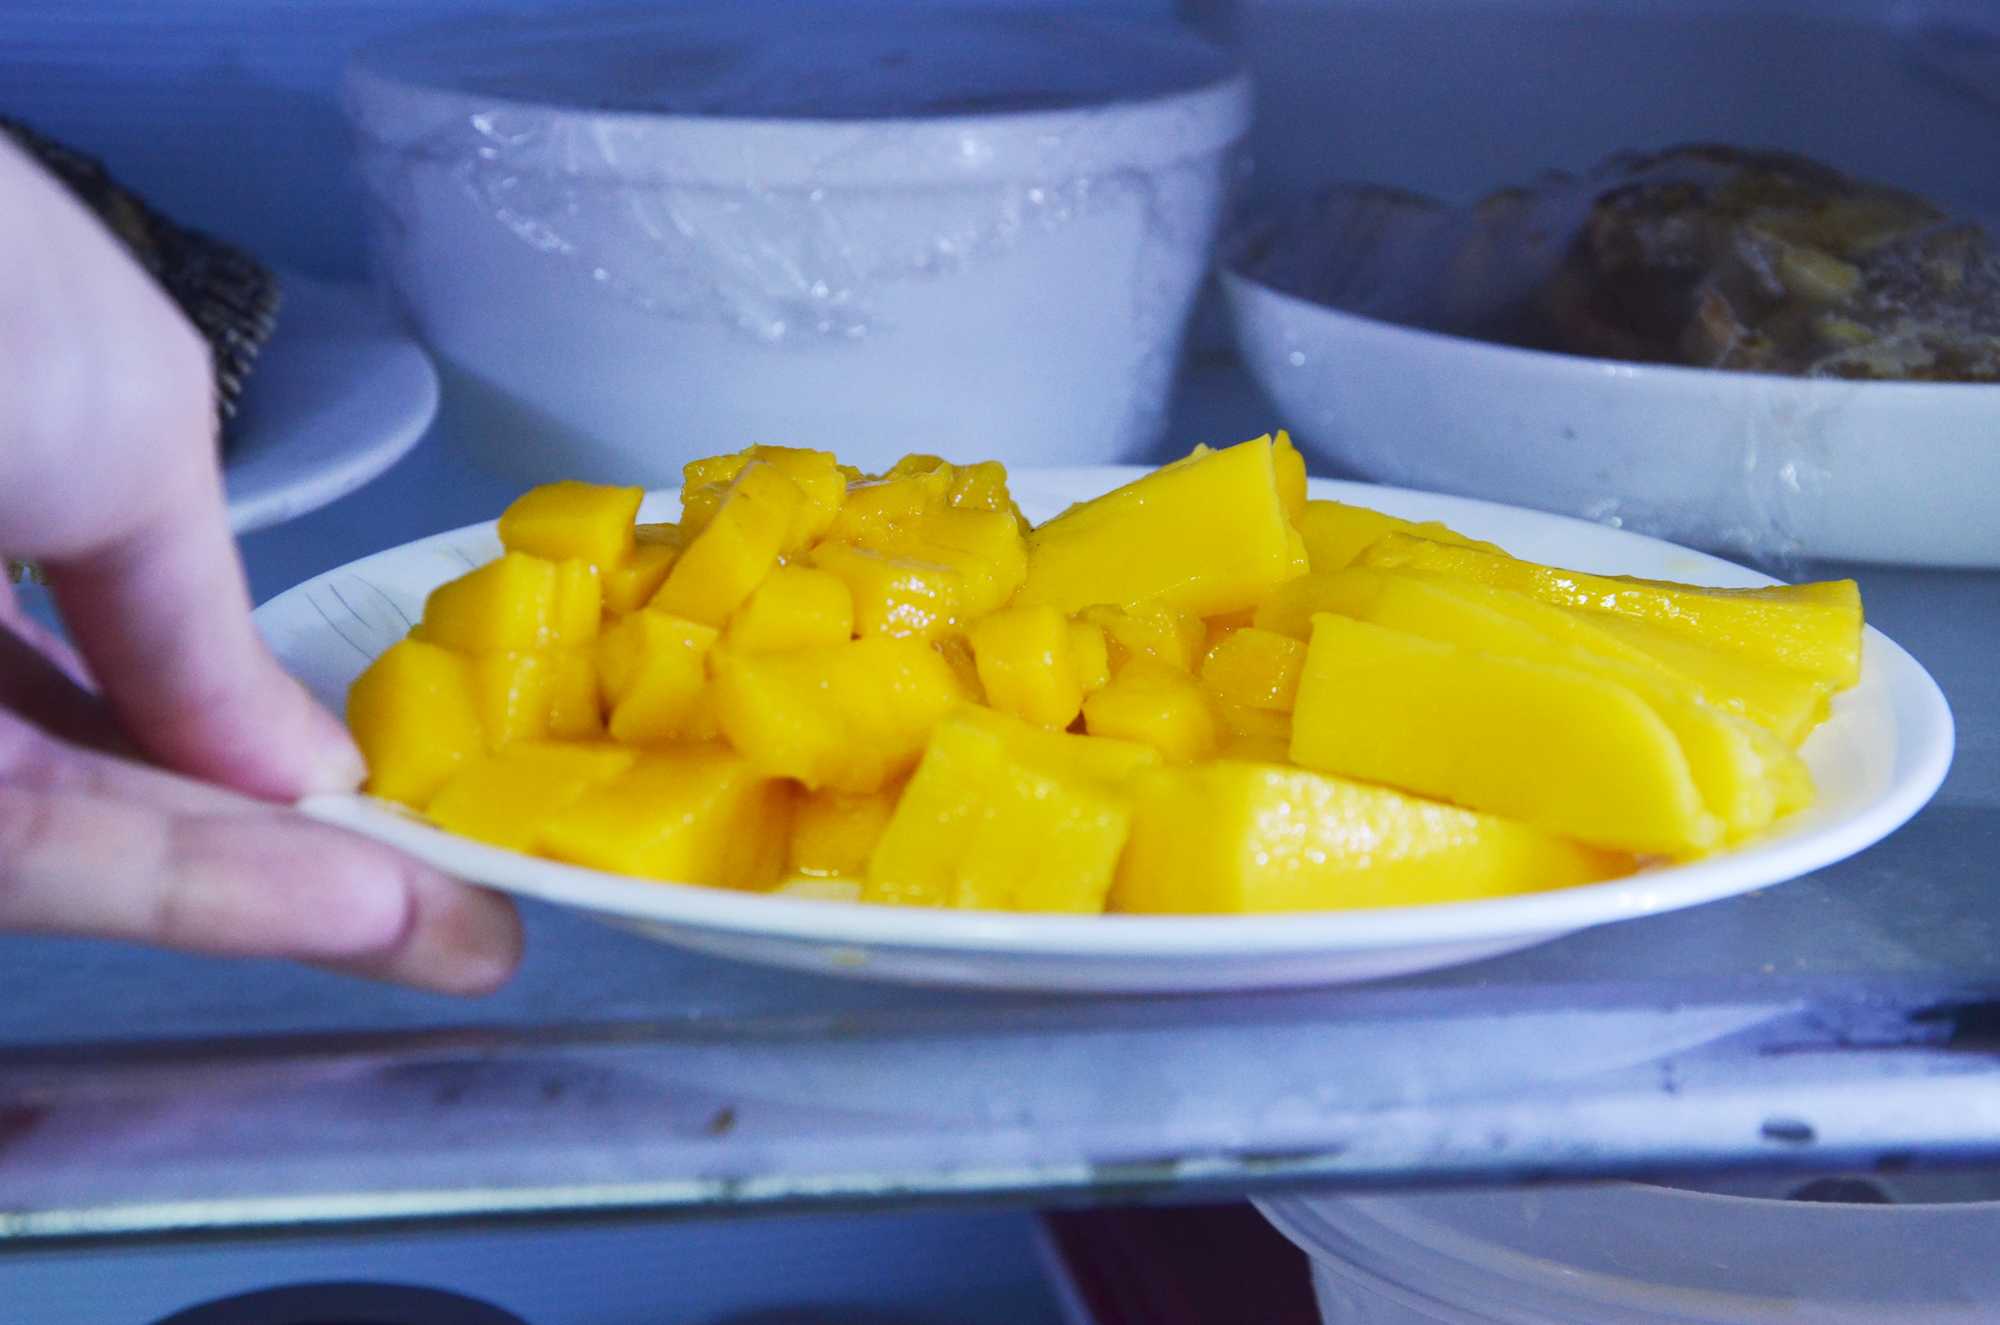 Как разрезать манго с косточкой правильно, красиво, пополам, кубиками, квадратиками, дольками. пошаговая инструкция с фото